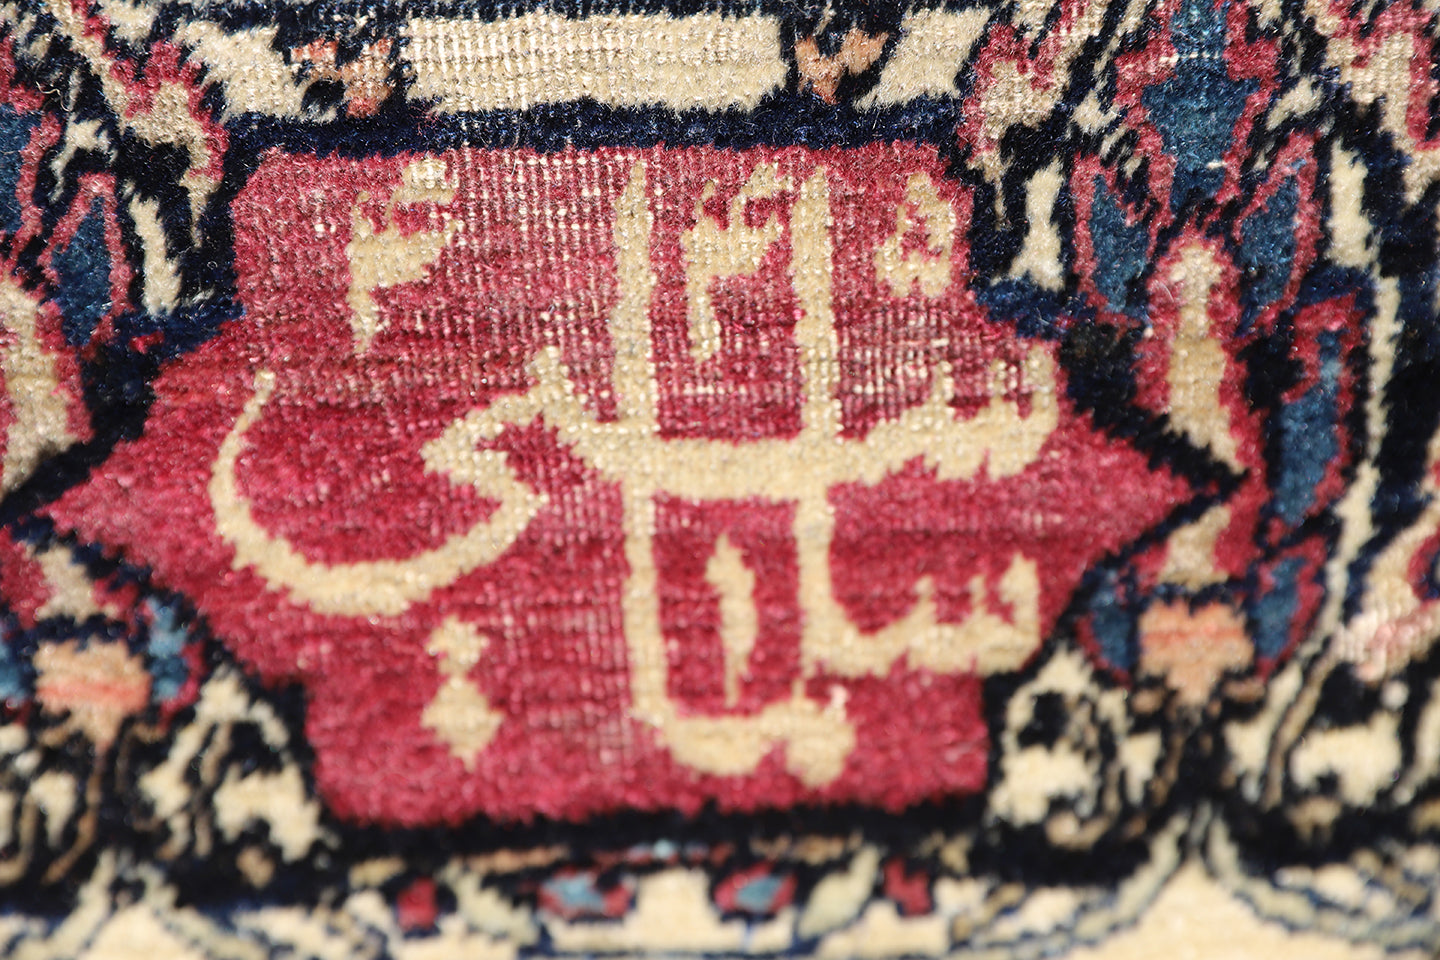 12x18 Antique Persian Kermanshah Large Rug